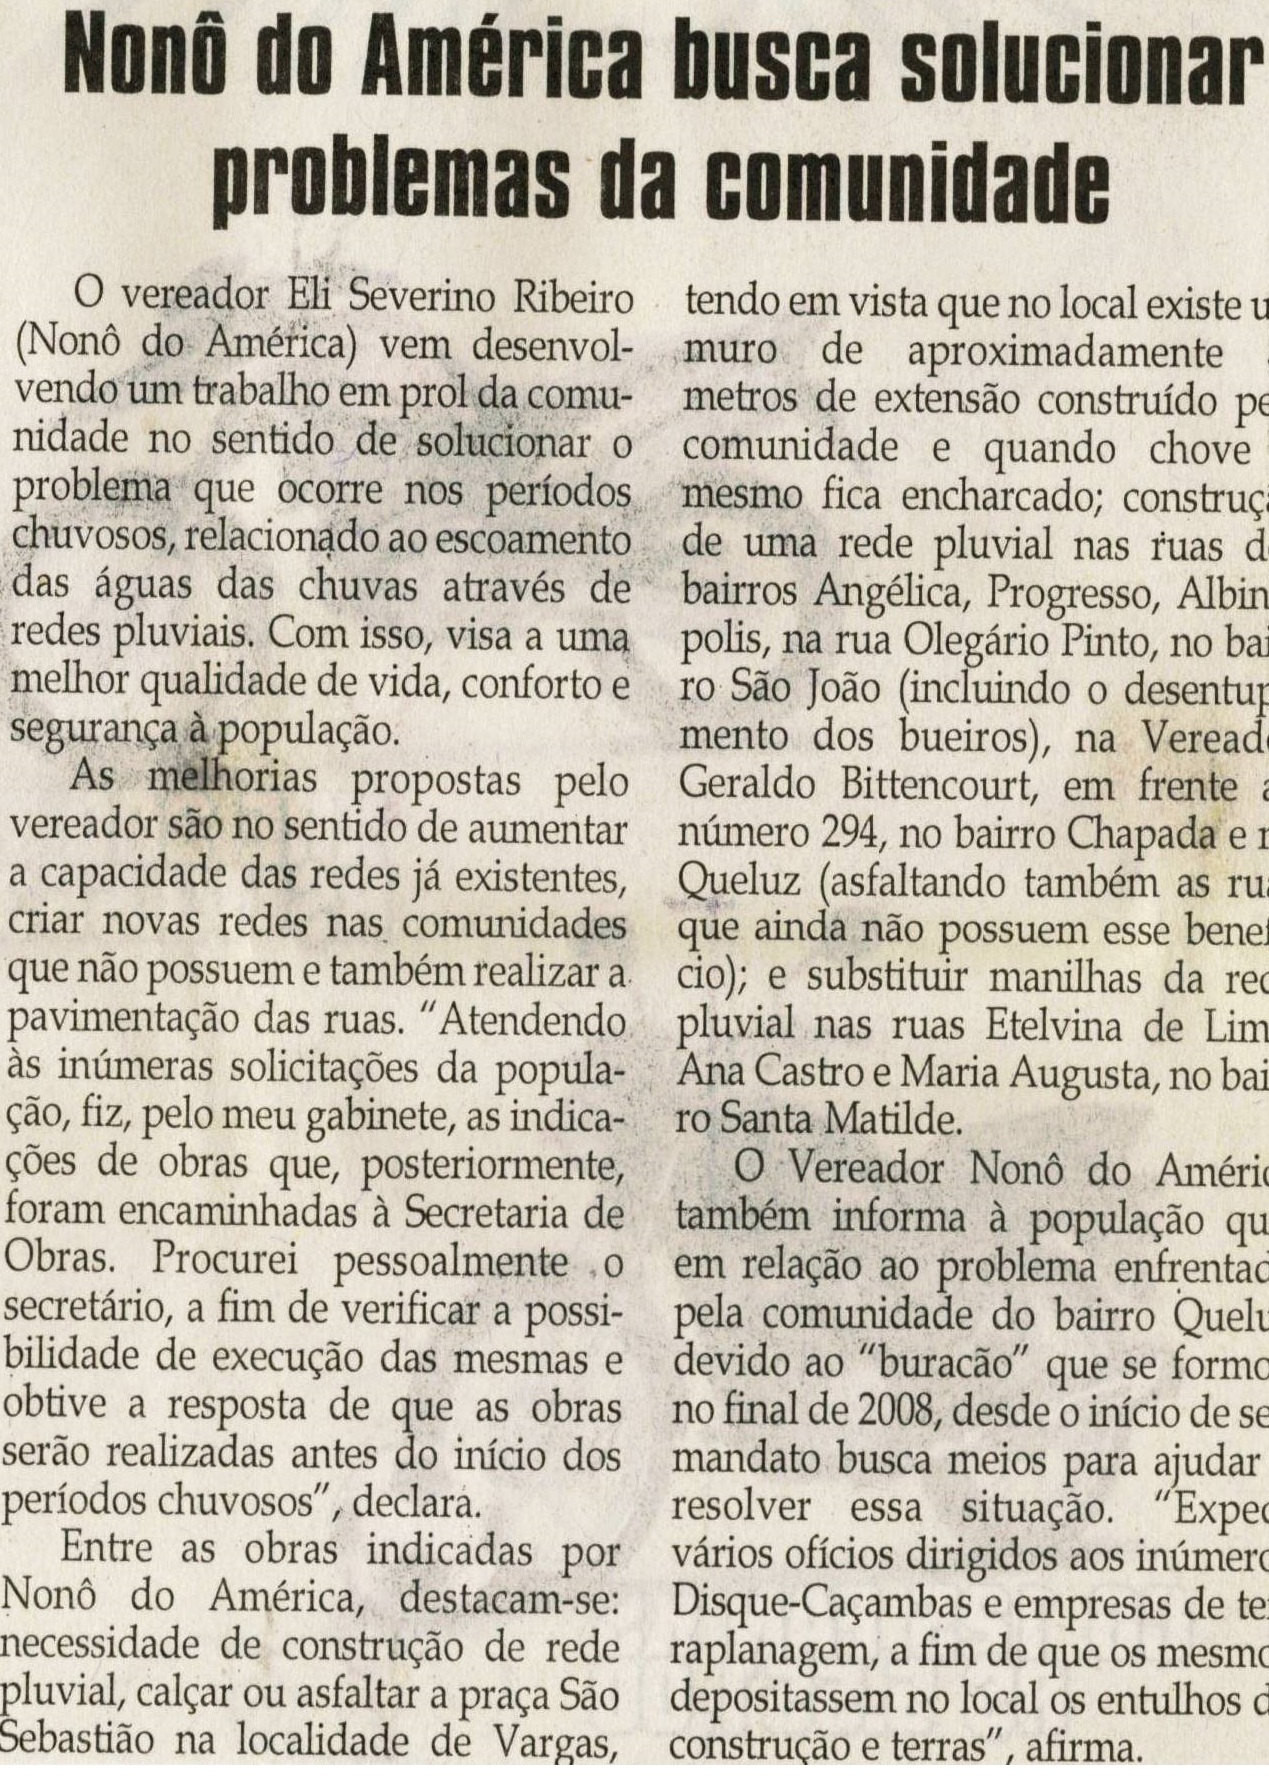 Nonô busca solucionar problemas da comunidade. Jornal  Correio da Cidade, Conselheiro Lafaiete, 26 jun. 2010, p. 4.